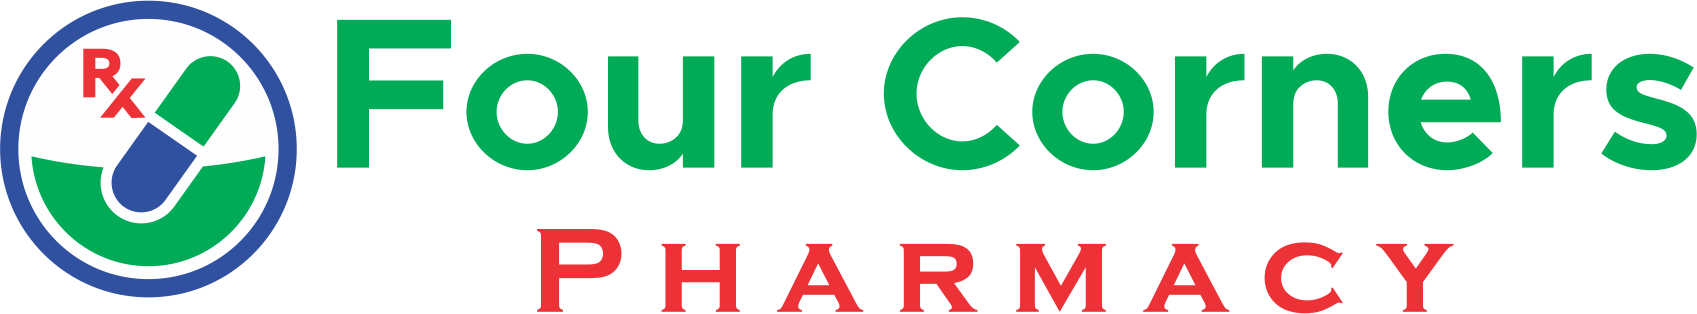 Four Corners Pharmacy Logo